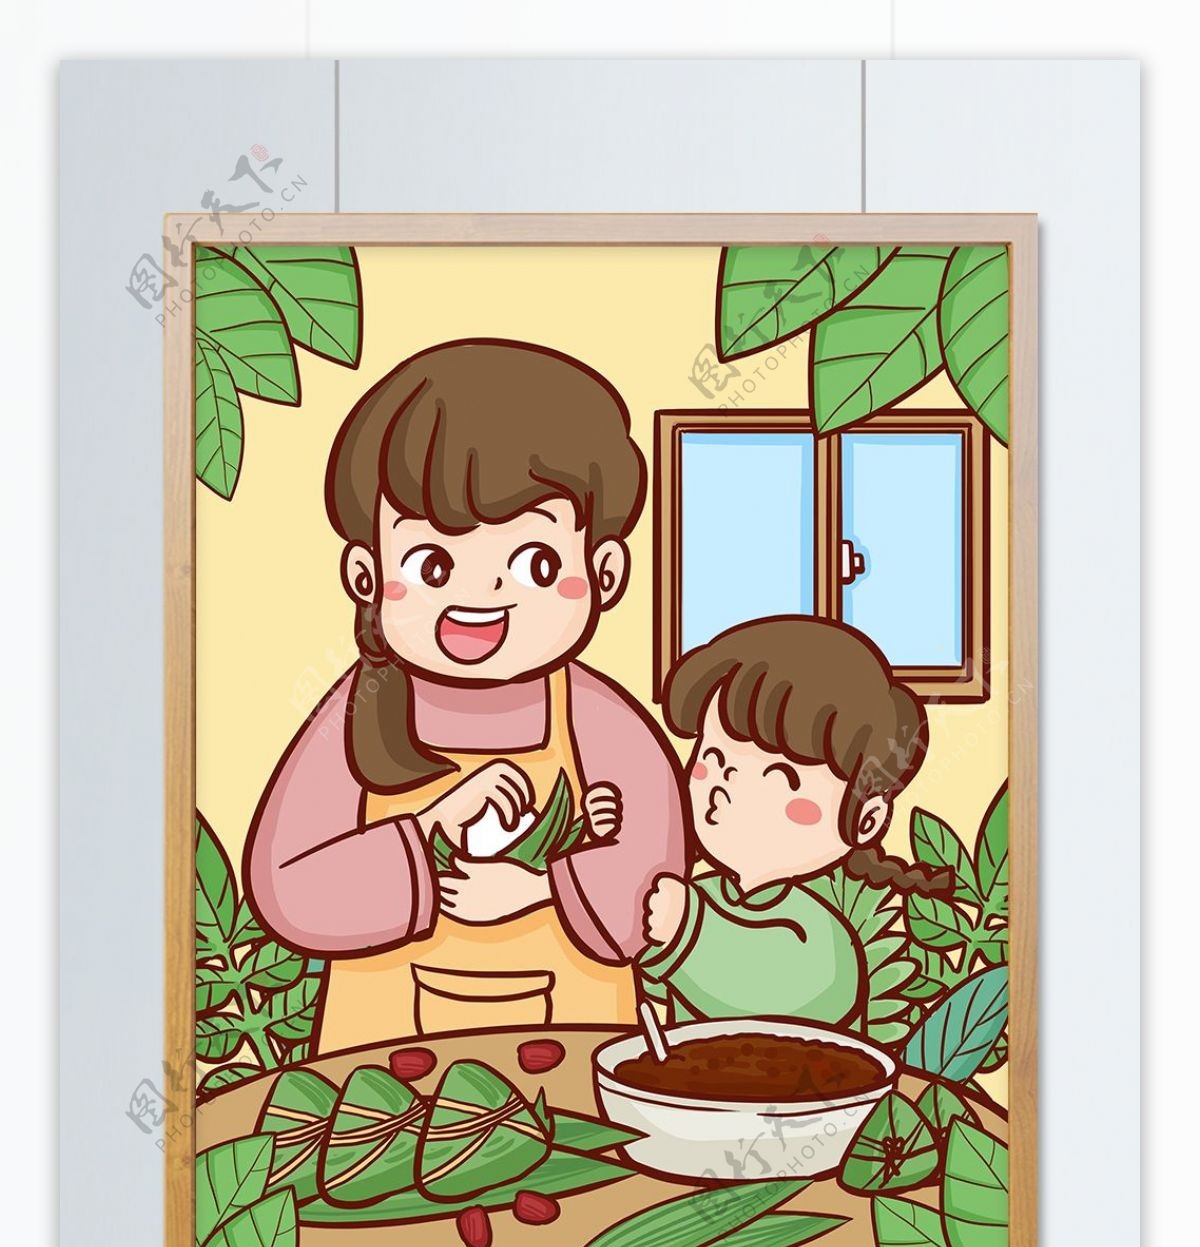 端午节传统节日妈妈教女儿包粽子手绘插画